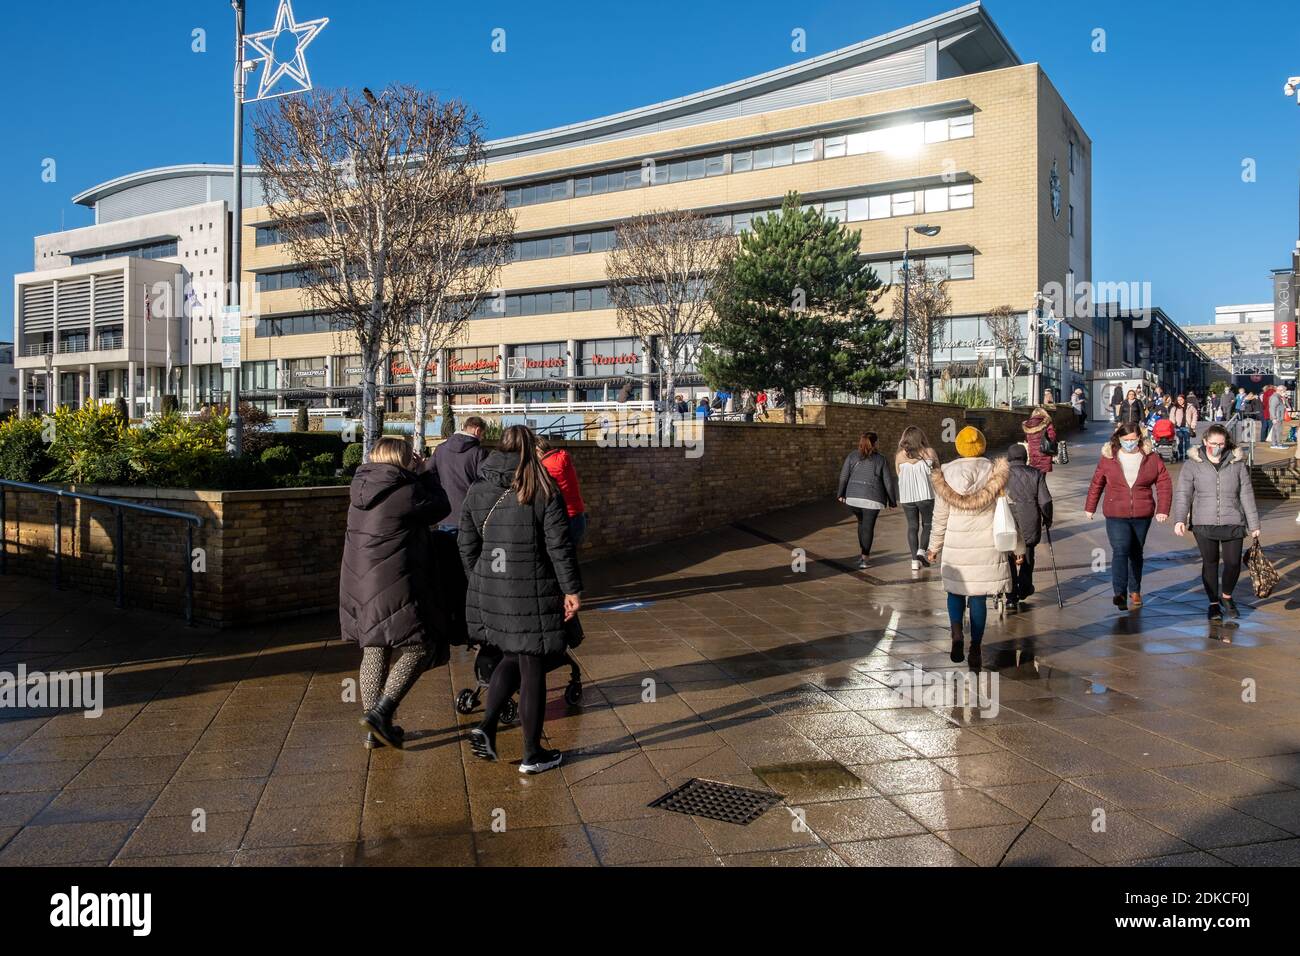 Harlow, Essex, Inghilterra. 12 dicembre 2020. Shoppers nel centro di Harlow Town davanti alla città di Essex che si sposta alle restrizioni di livello 3 dal 16 dicembre 2020 - fotografo : Brian Duffy Foto Stock